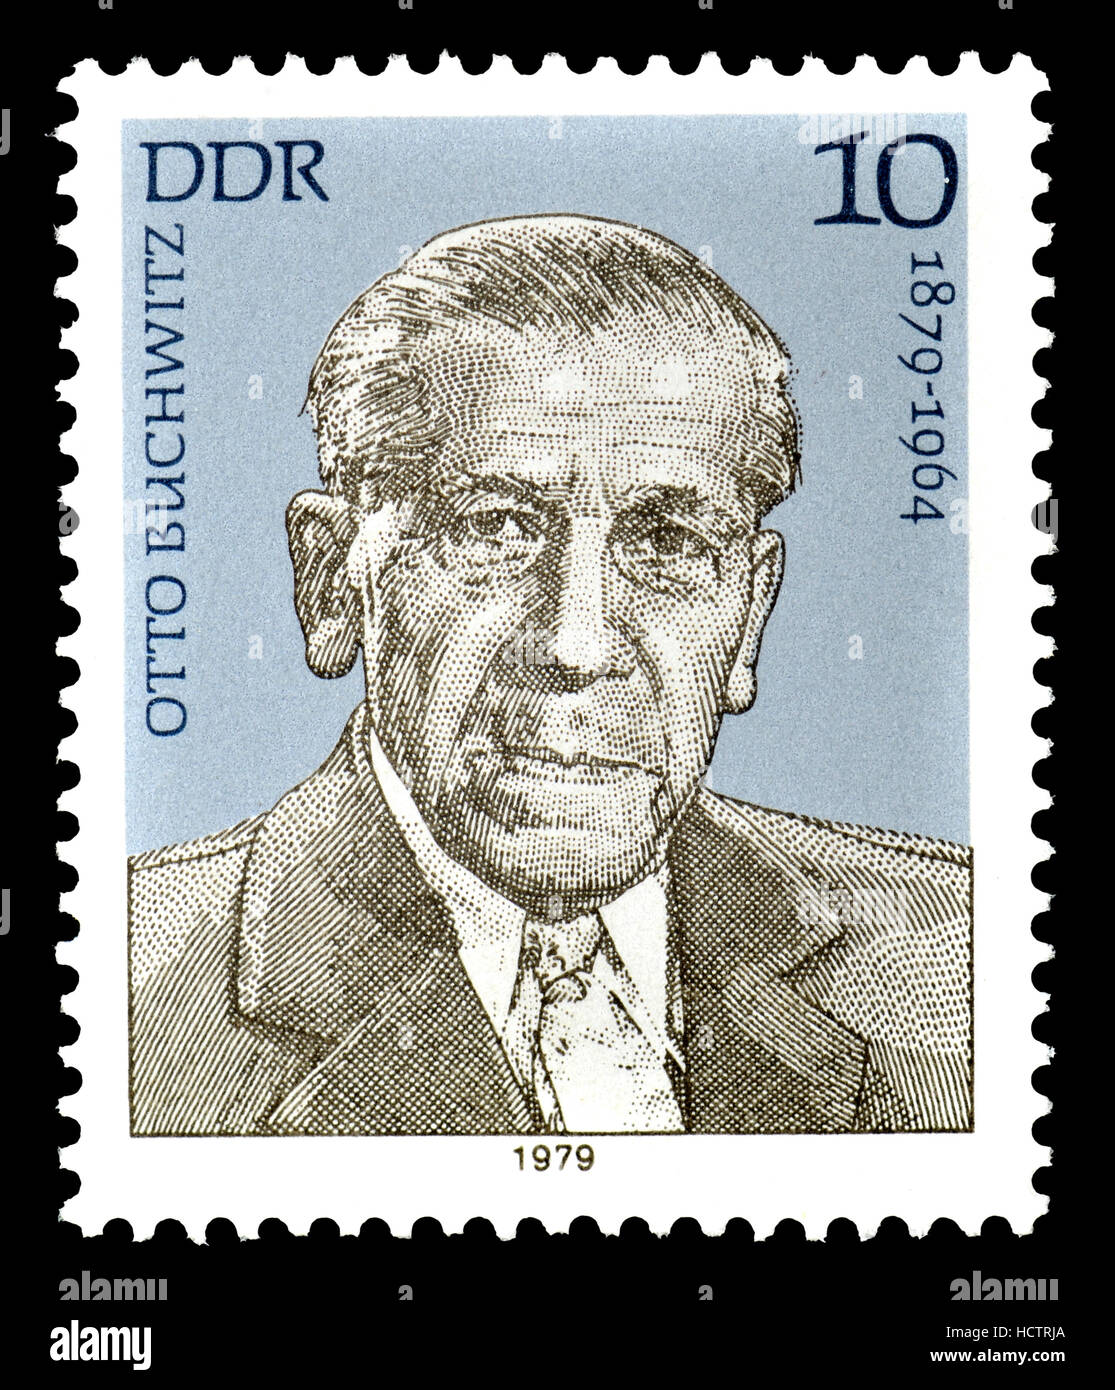 L'allemand de l'Est (DDR) Timbre-poste (1979) : Otto Buchwitz (1879-1964) Homme politique communiste allemand Banque D'Images